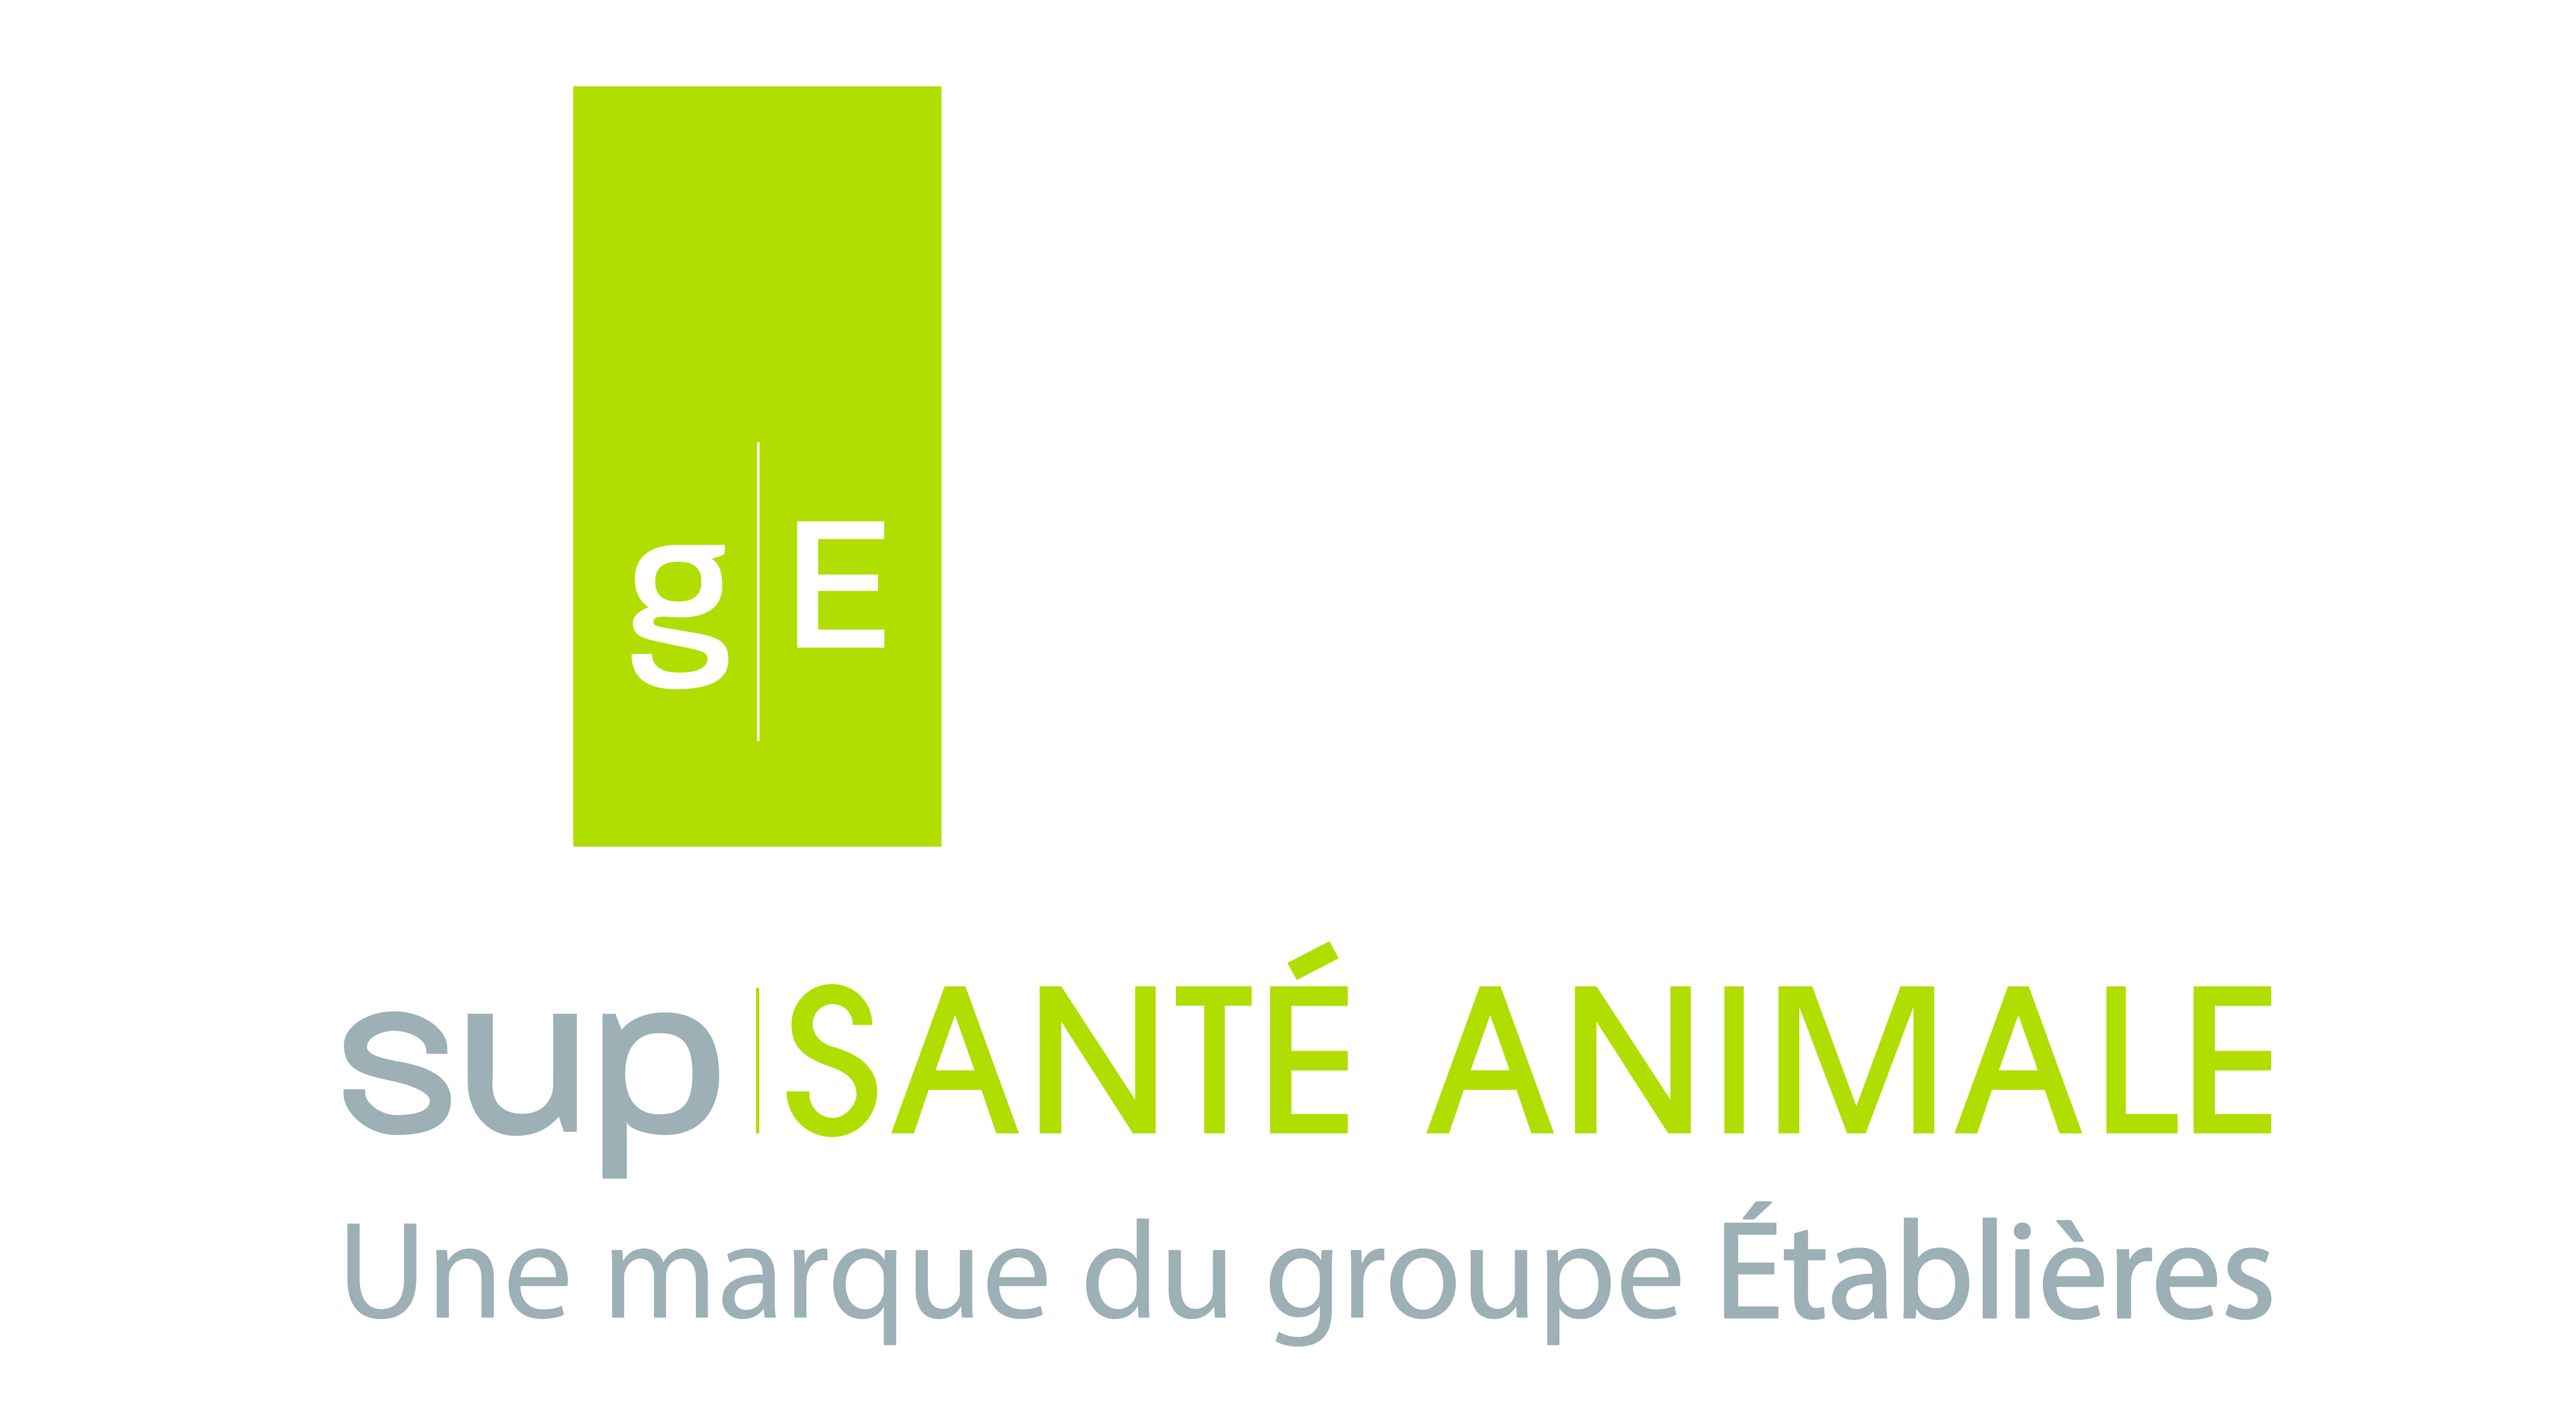 logo Sup santé animale - Les Etablières